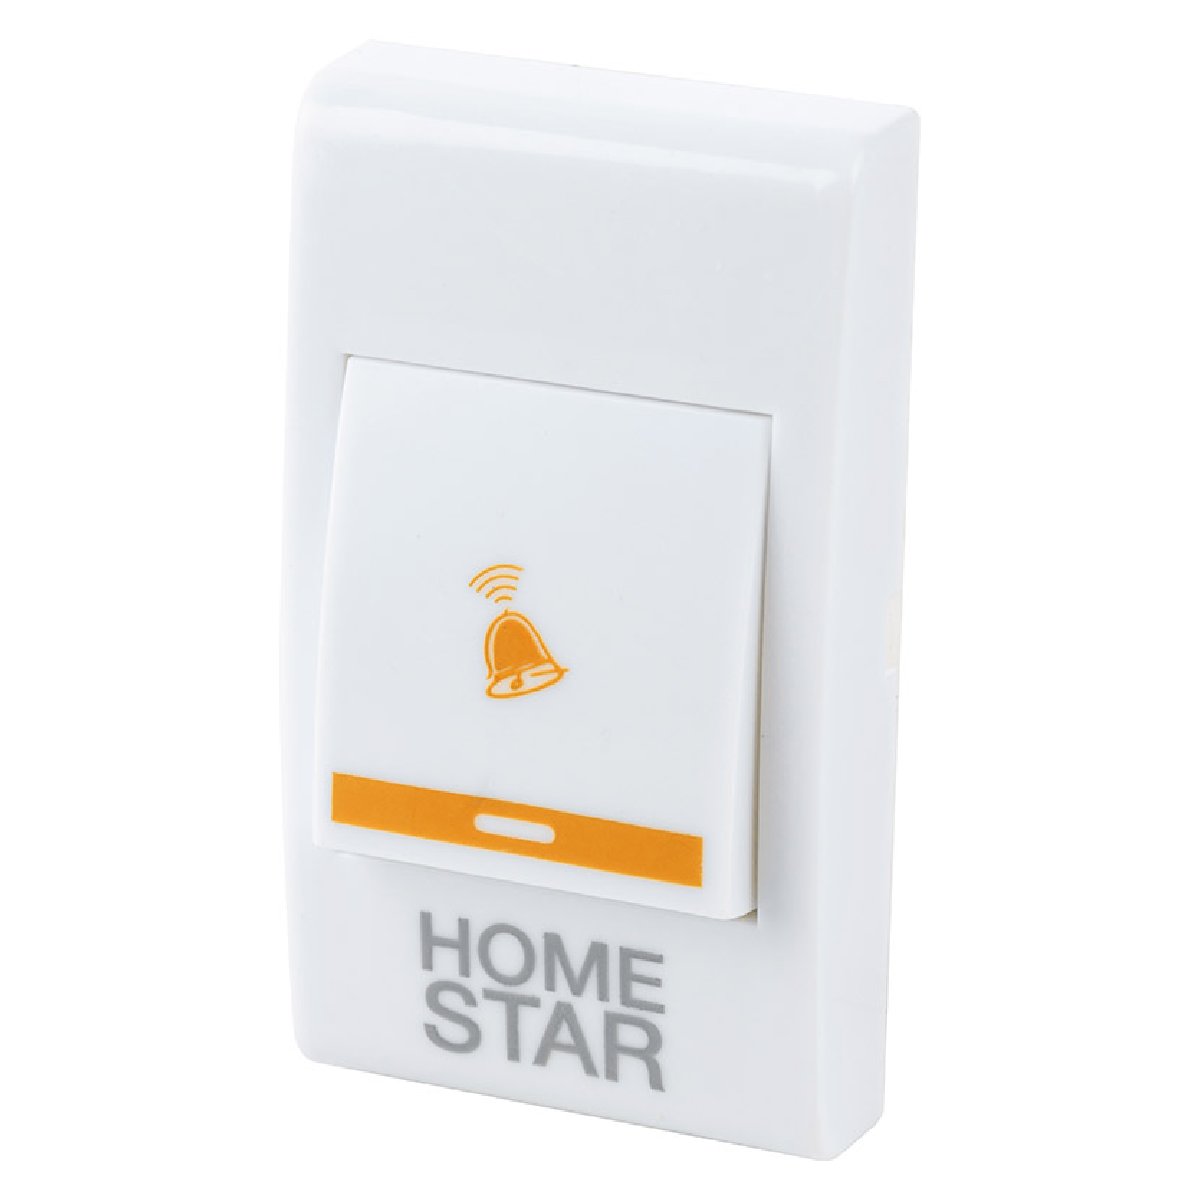 Звонок электрический HomeStar HS-0104 беспроводной (103609)